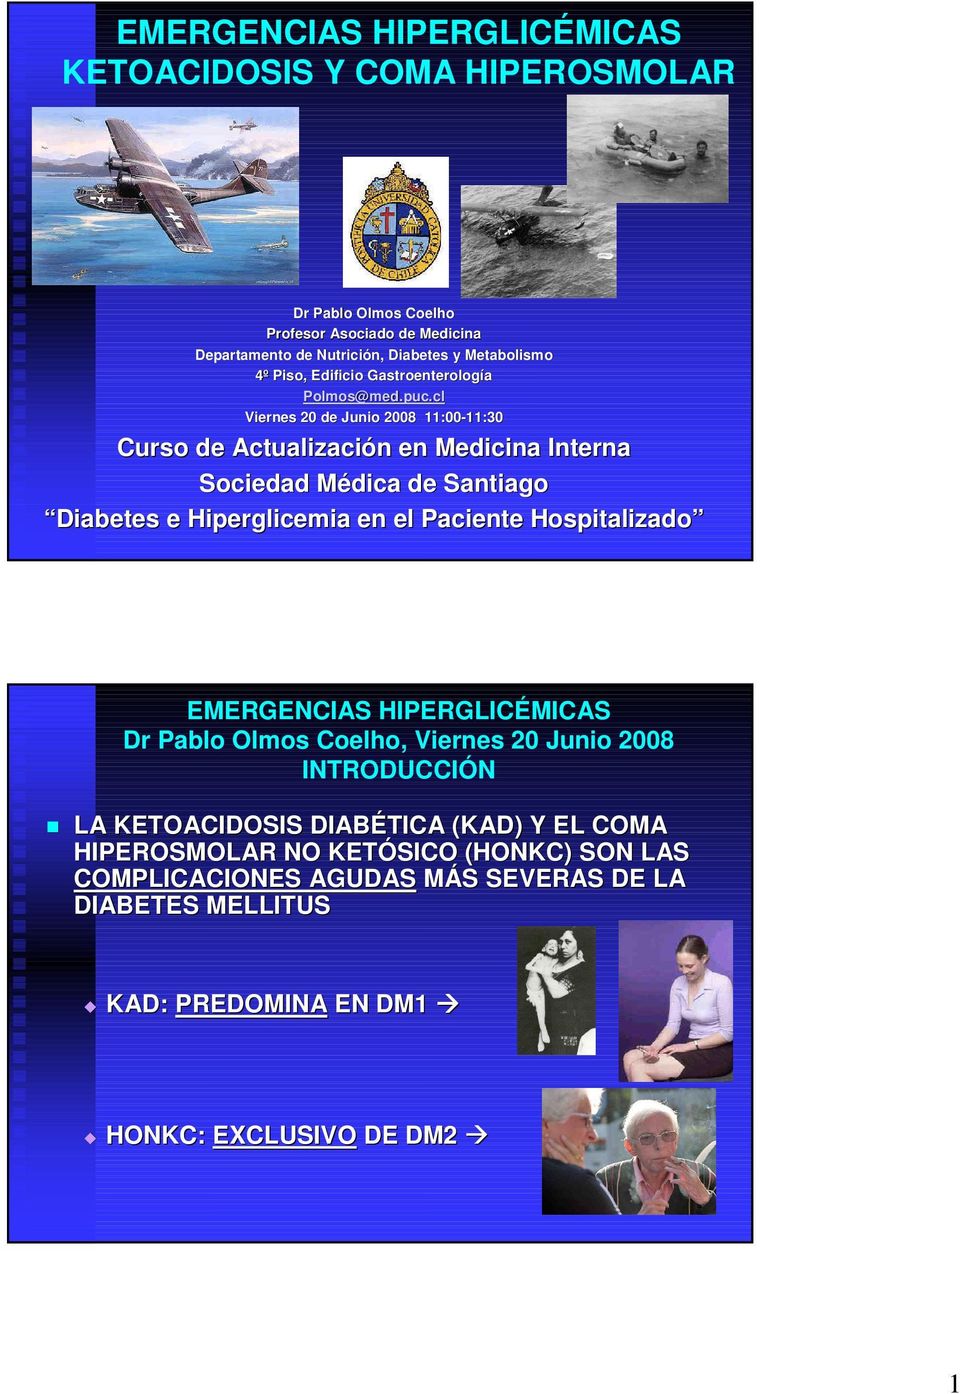 cl Viernes 20 de Junio 2008 11:00-11:30 11:30 Curso de Actualización en Medicina Interna Sociedad Médica de Santiago Diabetes e Hiperglicemia en el